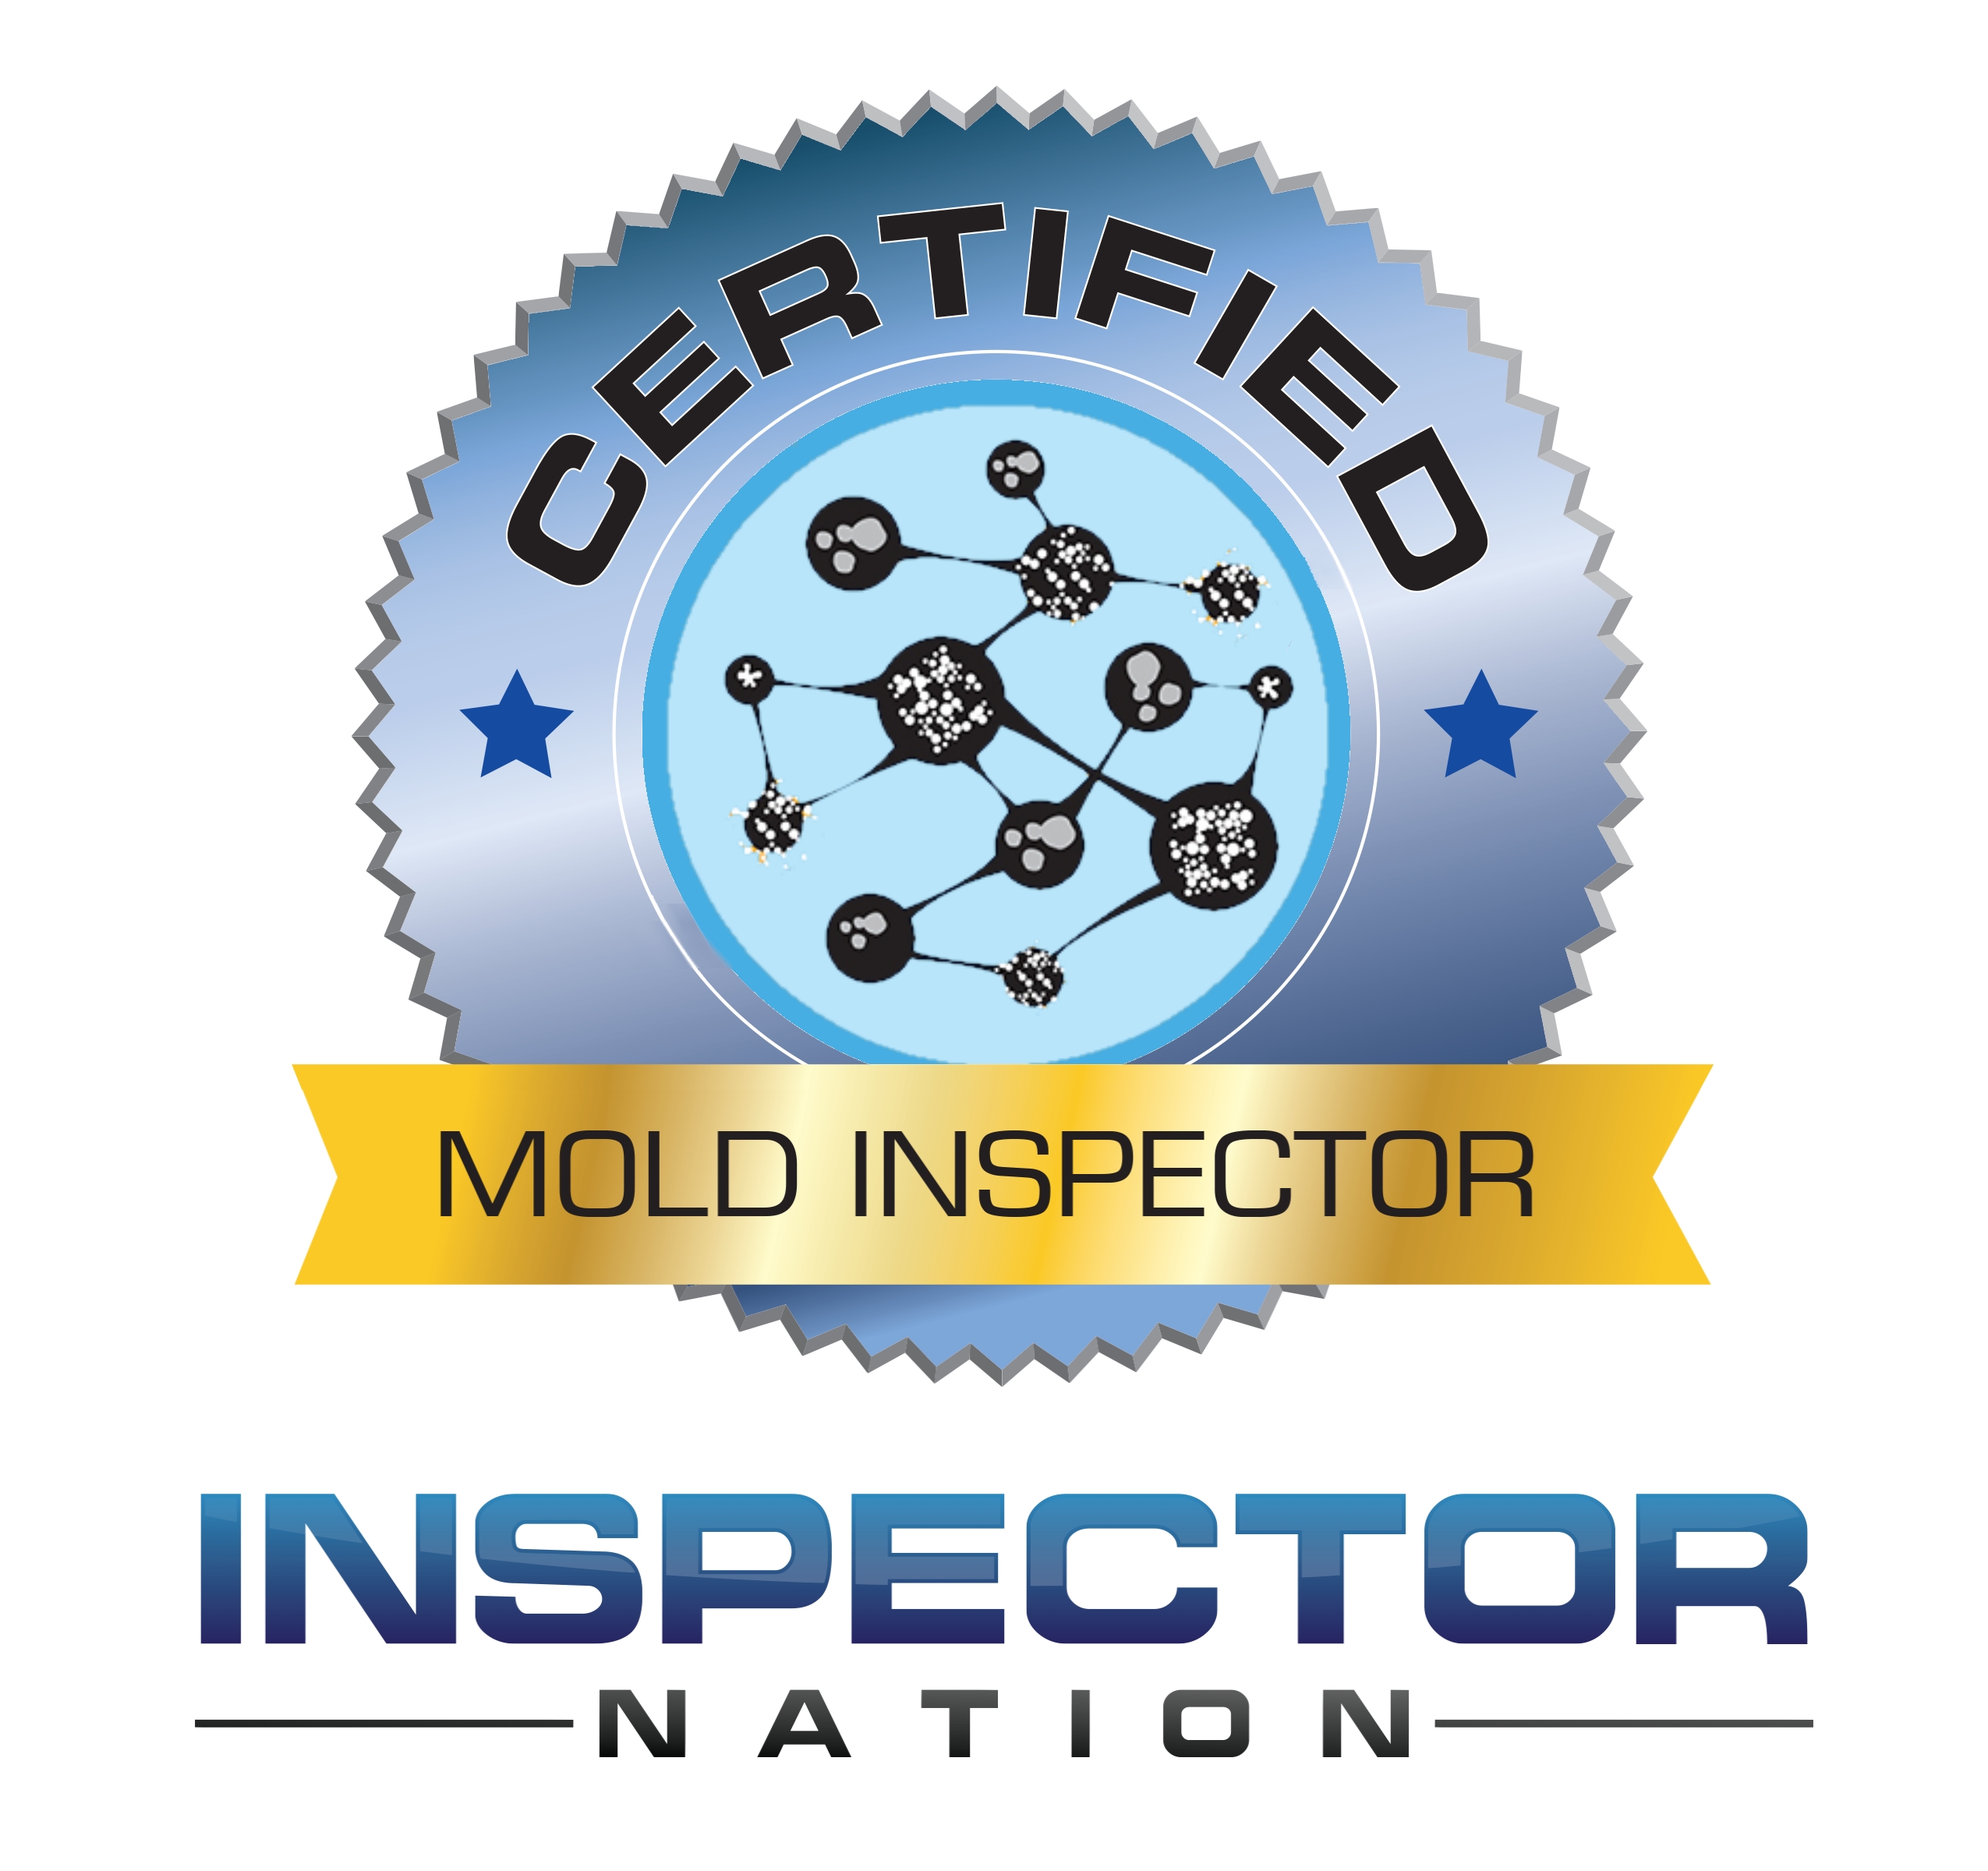 Boch, Kelle Certified Pre-Dry Wall Inspector